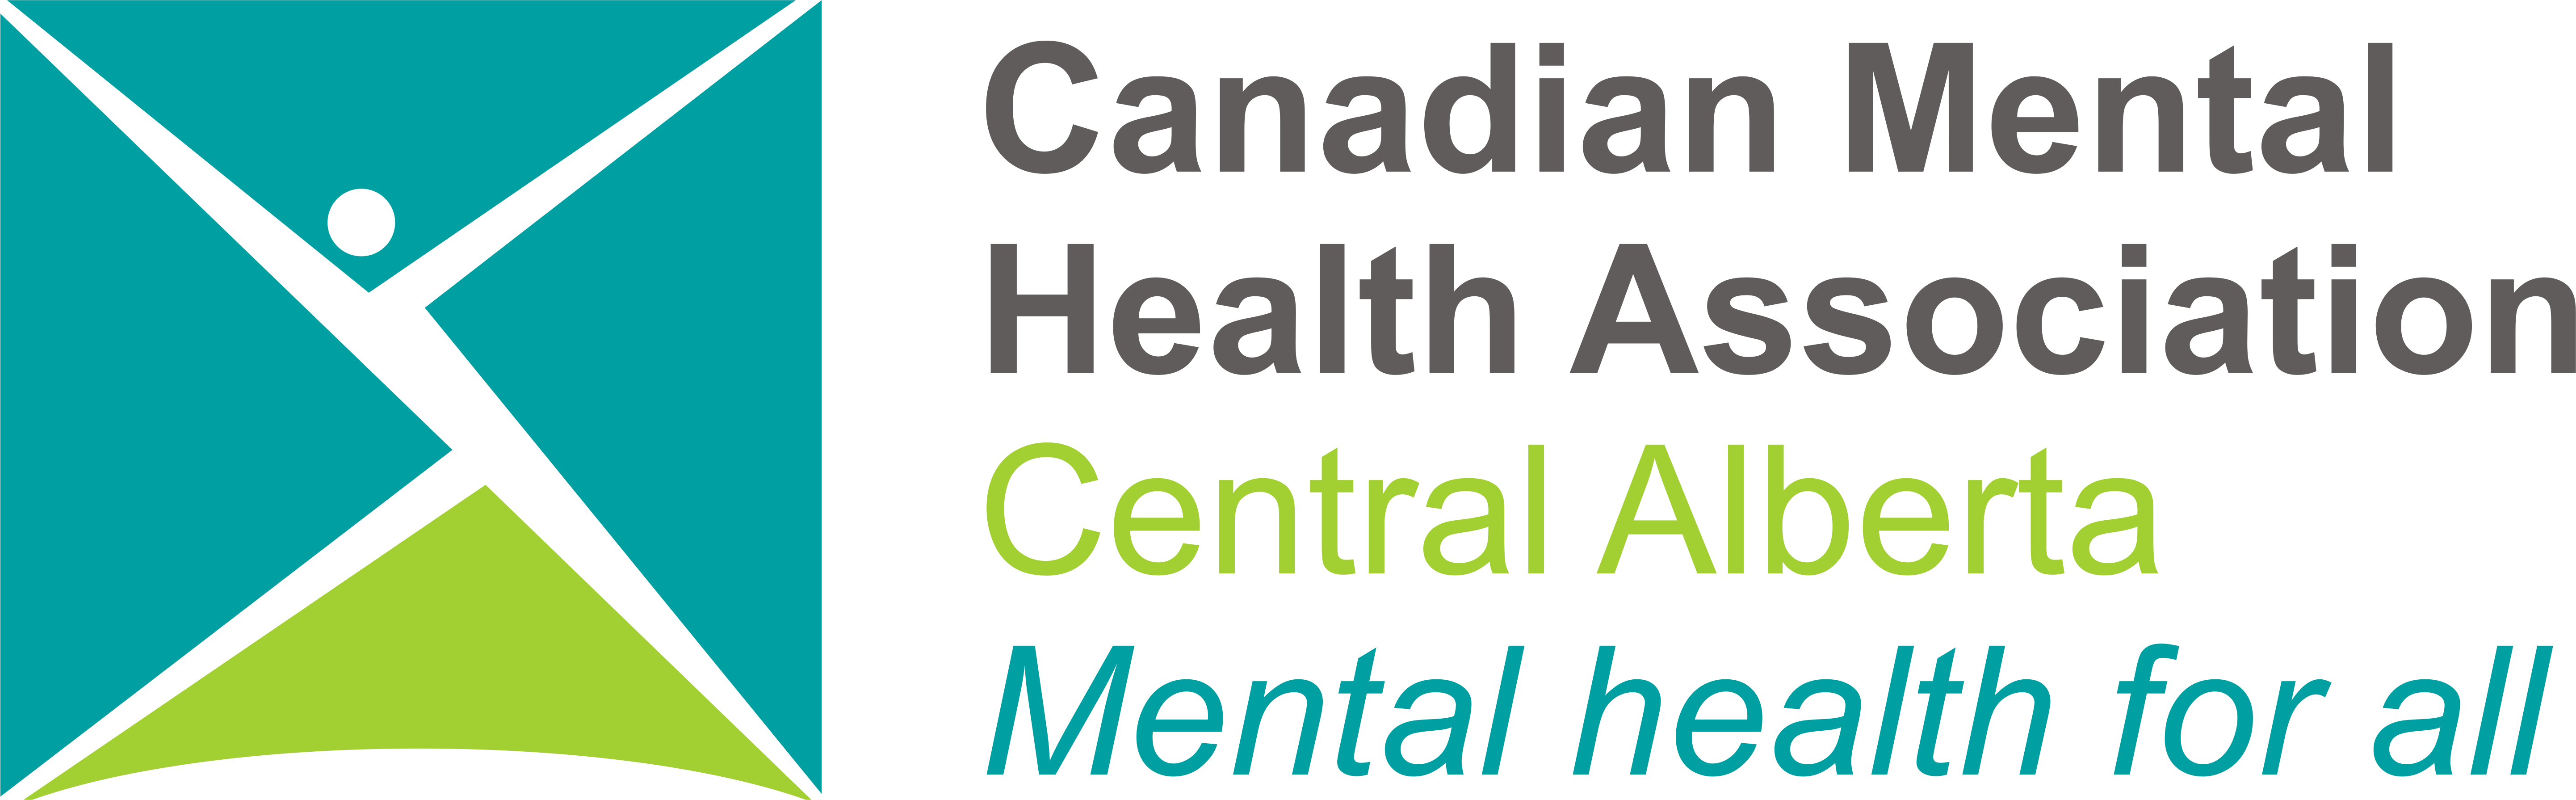 Canadian Mental Health Association Central Alberta Region